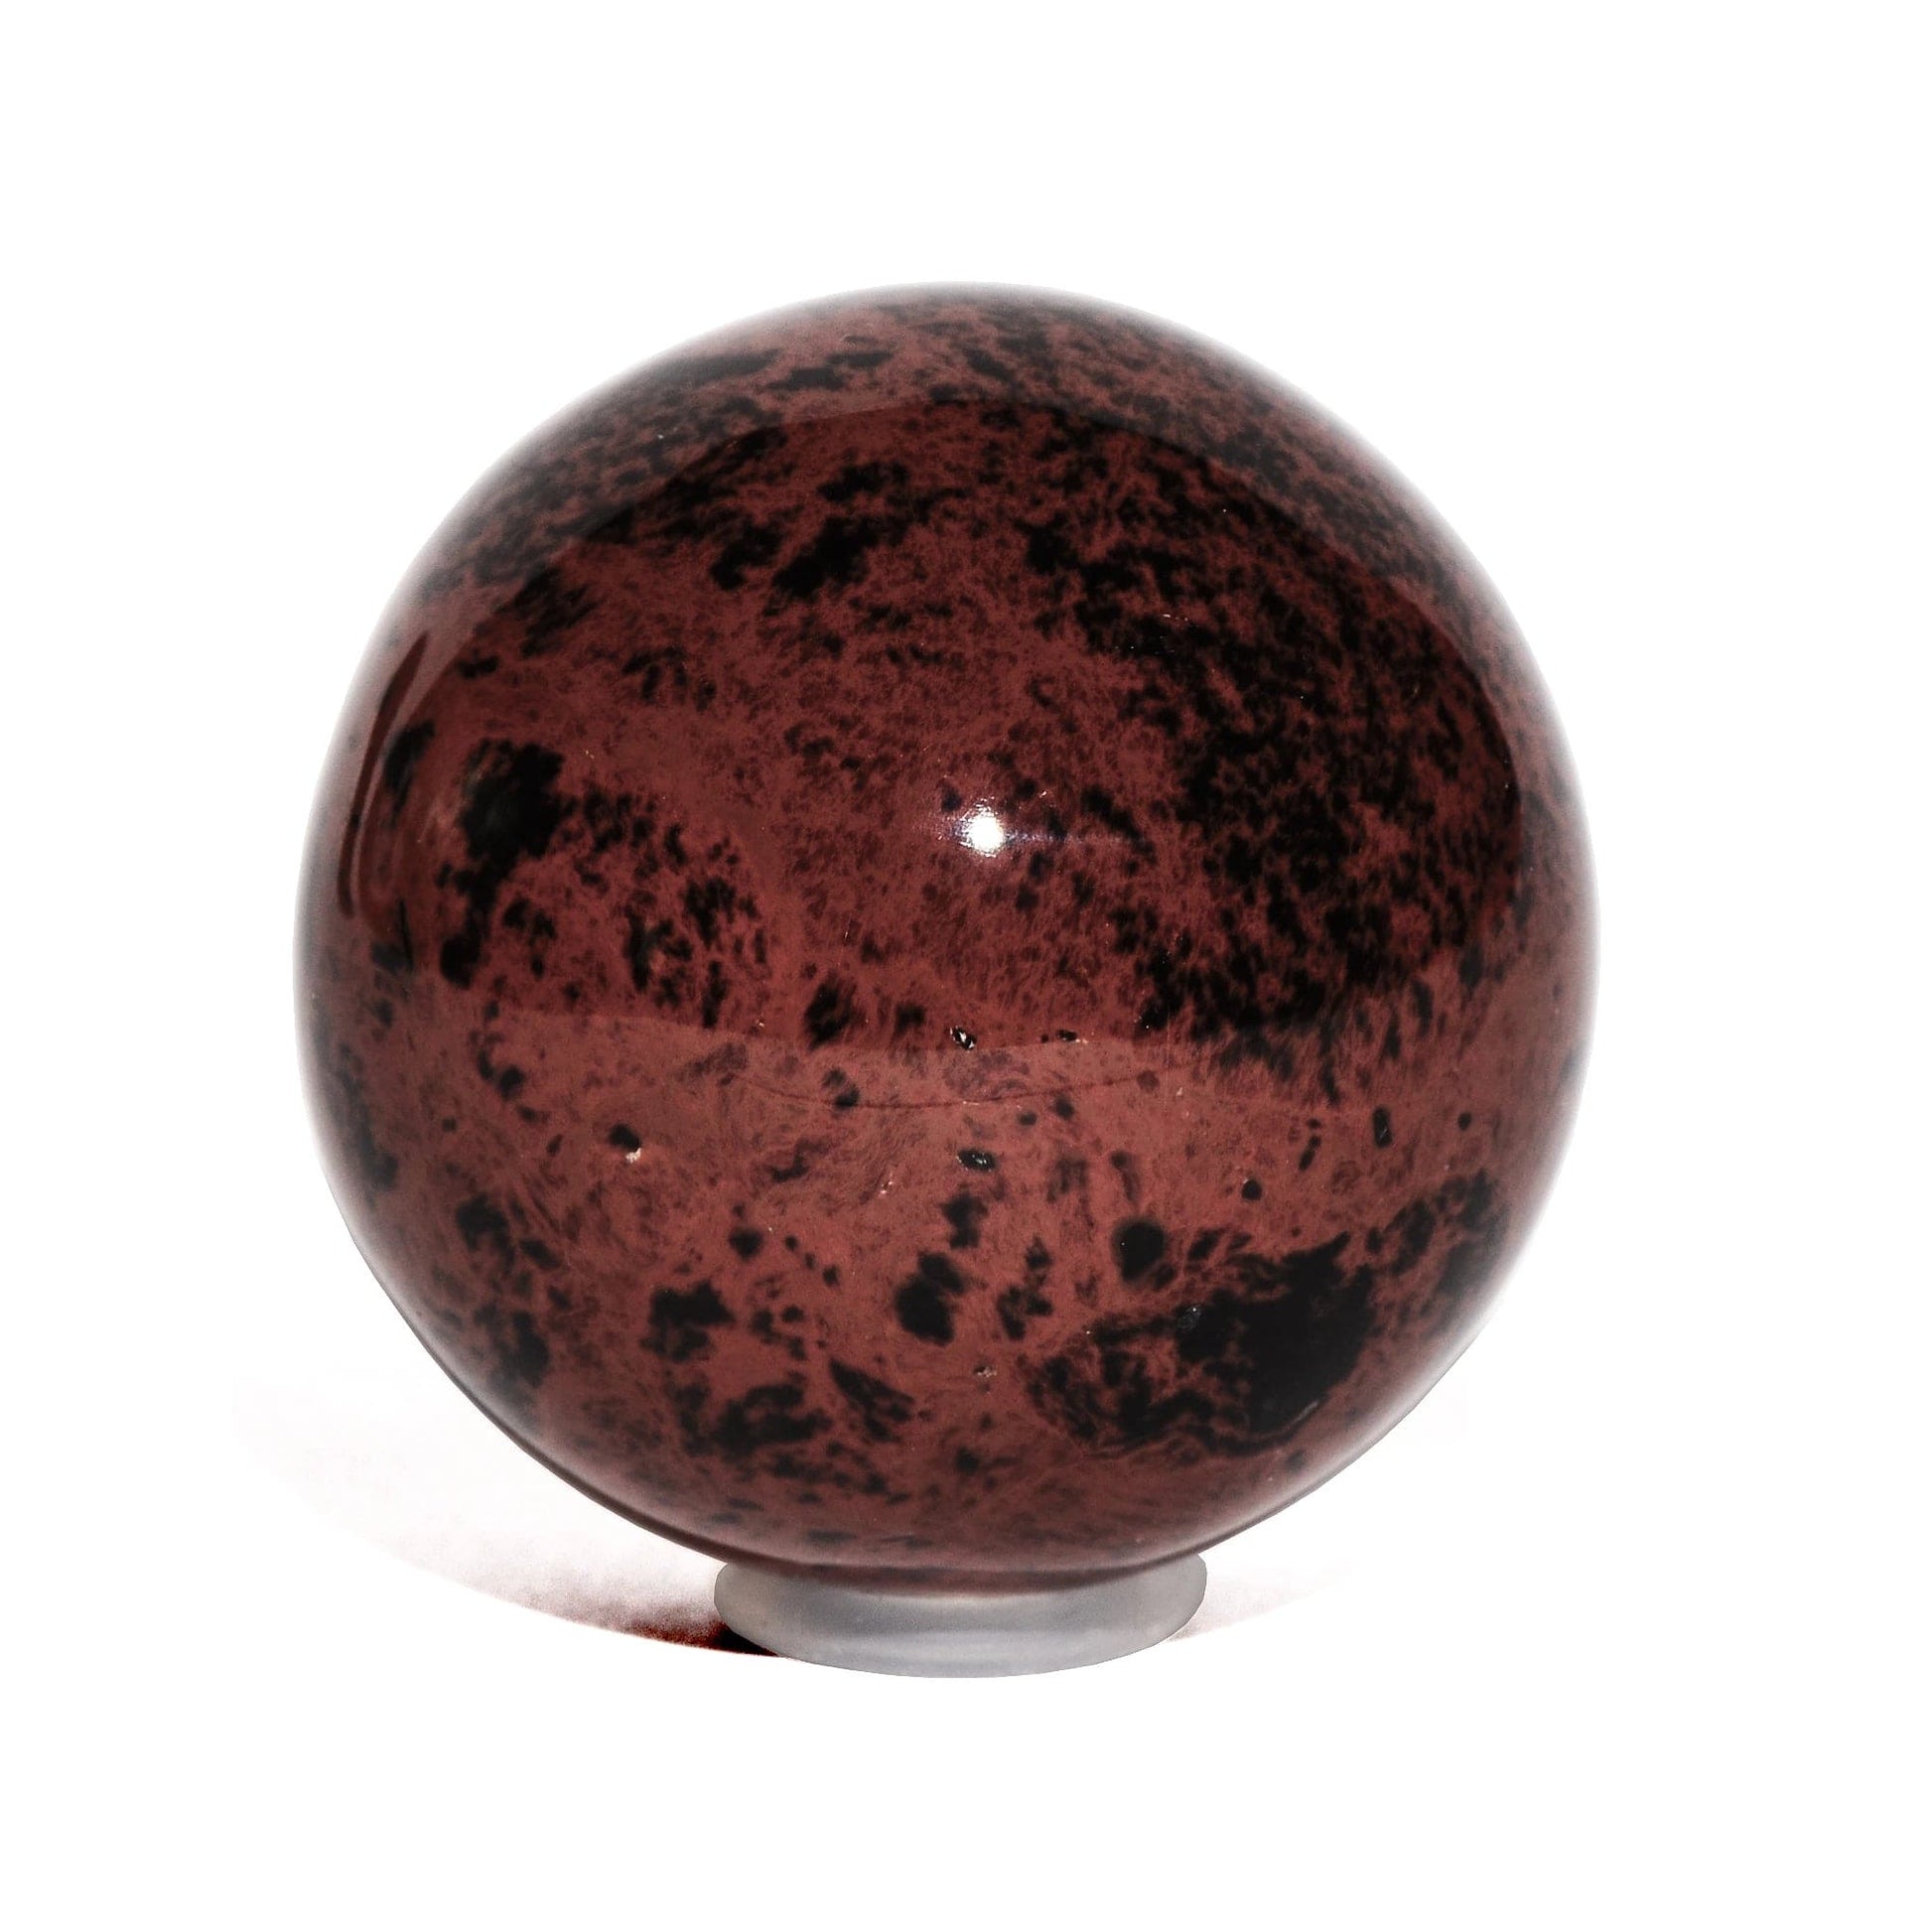 Mahogany Obsidian Sphere - Polished